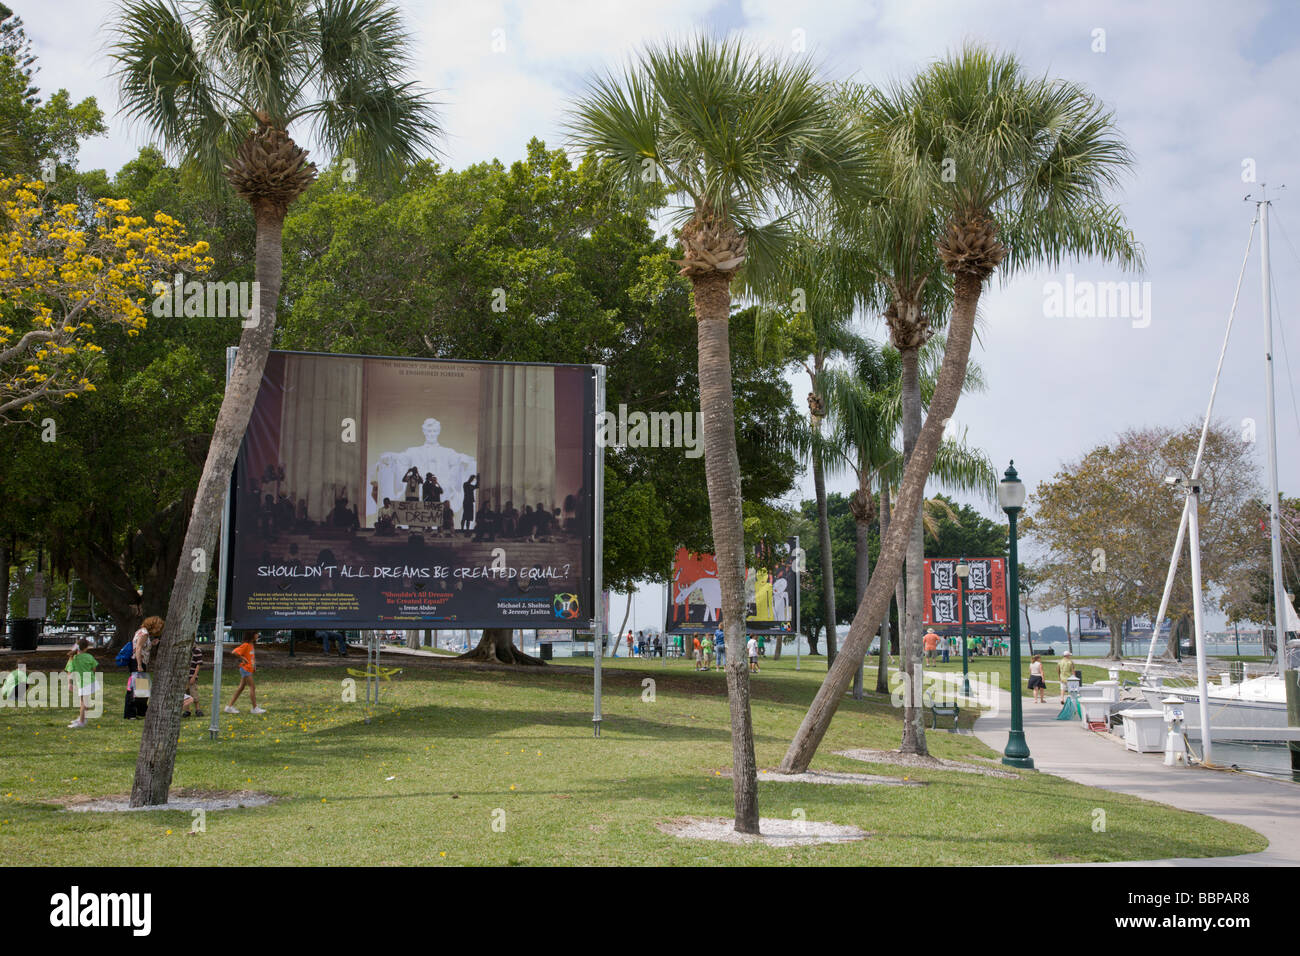 En 2009, el Sarasota Bayfront Park en Sarasota, Florida, fue el anfitrión de la 'abrazar nuestras diferencias" Exposición de arte en vallas exteriores. Foto de stock